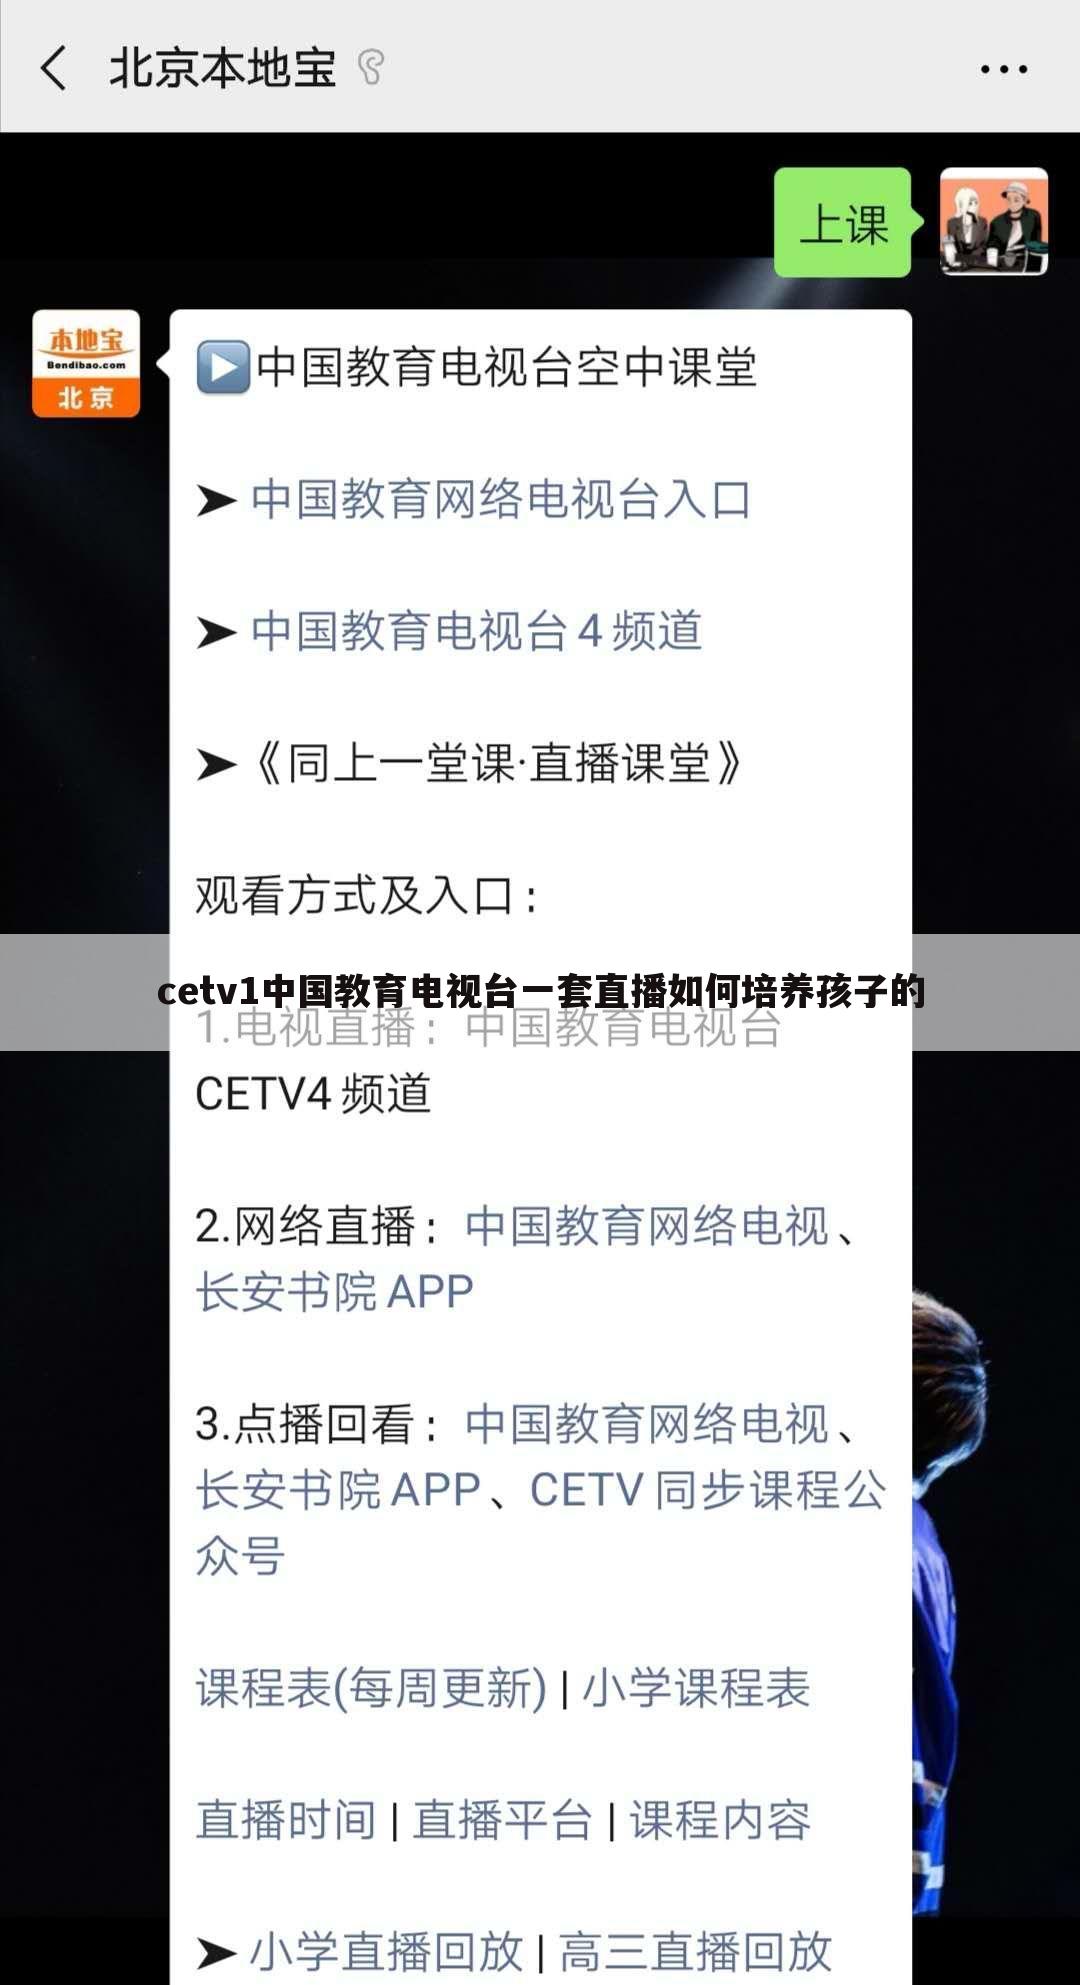 cetv1中国教育电视台一套直播如何培养孩子的